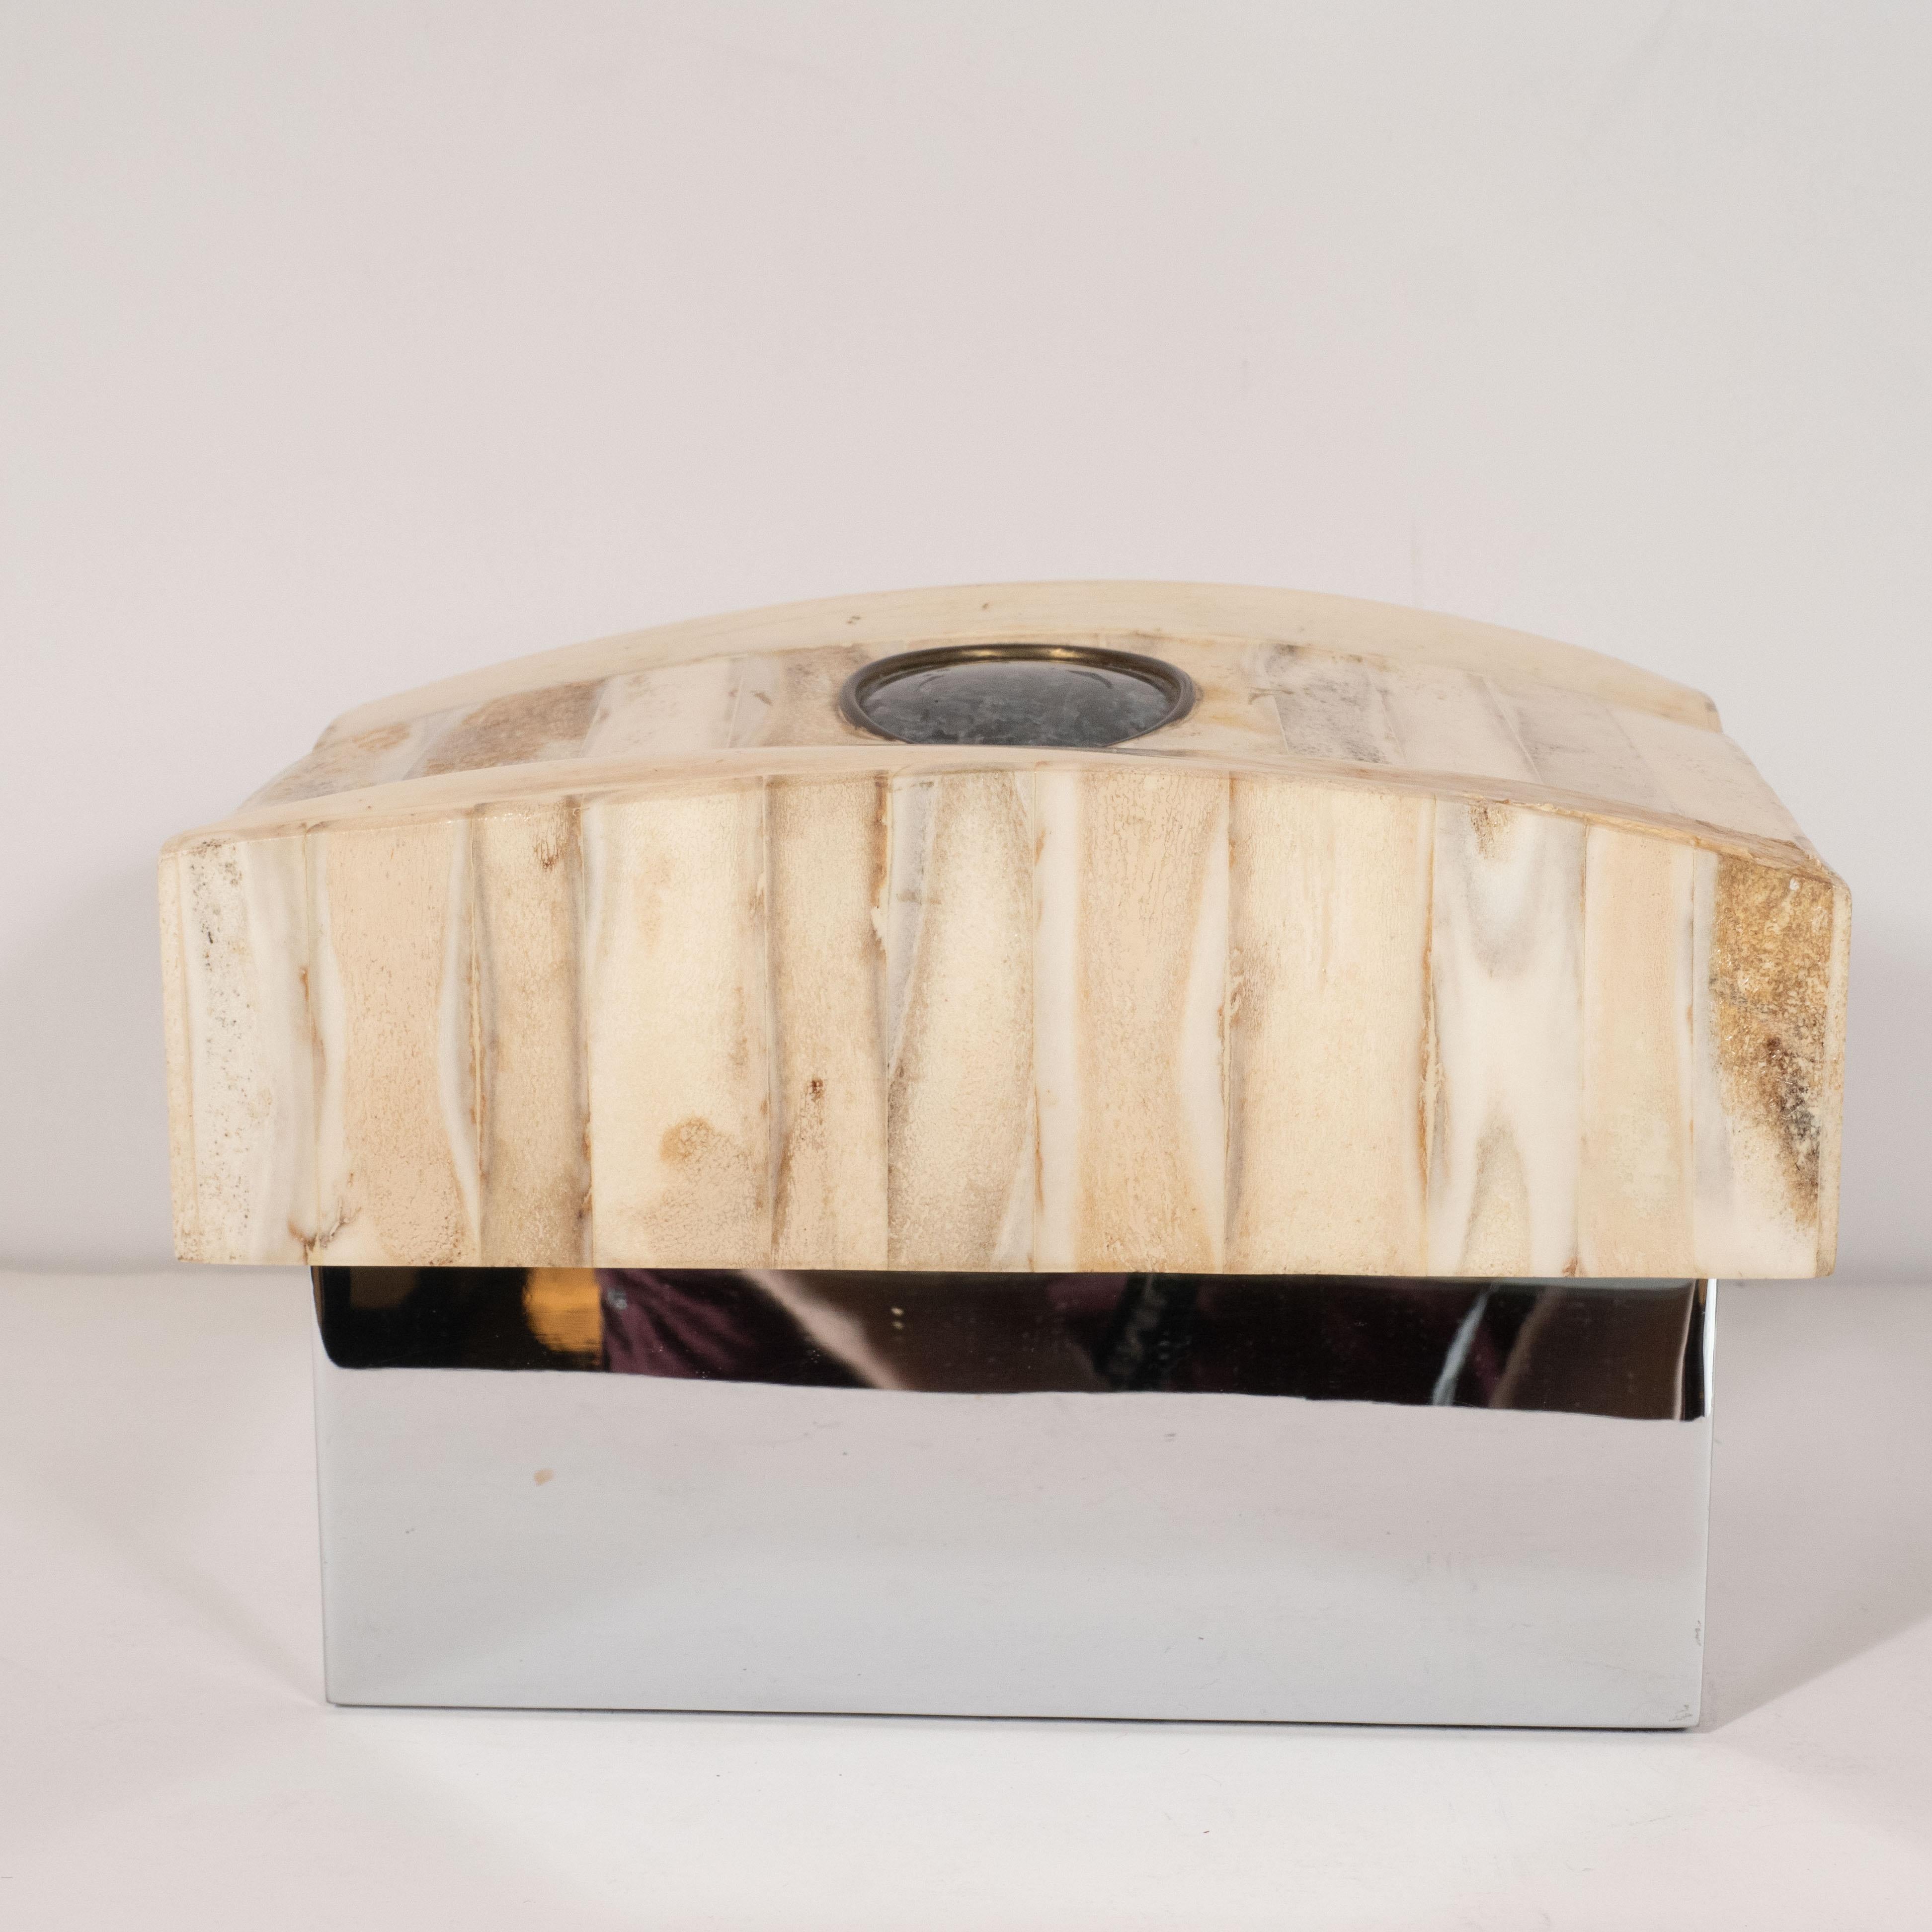 Cette boîte décorative audacieuse et sophistiquée a été réalisée par les estimés artisans Gene Jonson et Robert Marcius aux États-Unis, vers 1970. C'est un exemple particulièrement étonnant de leur pratique. Il présente un plateau en bois de cerf